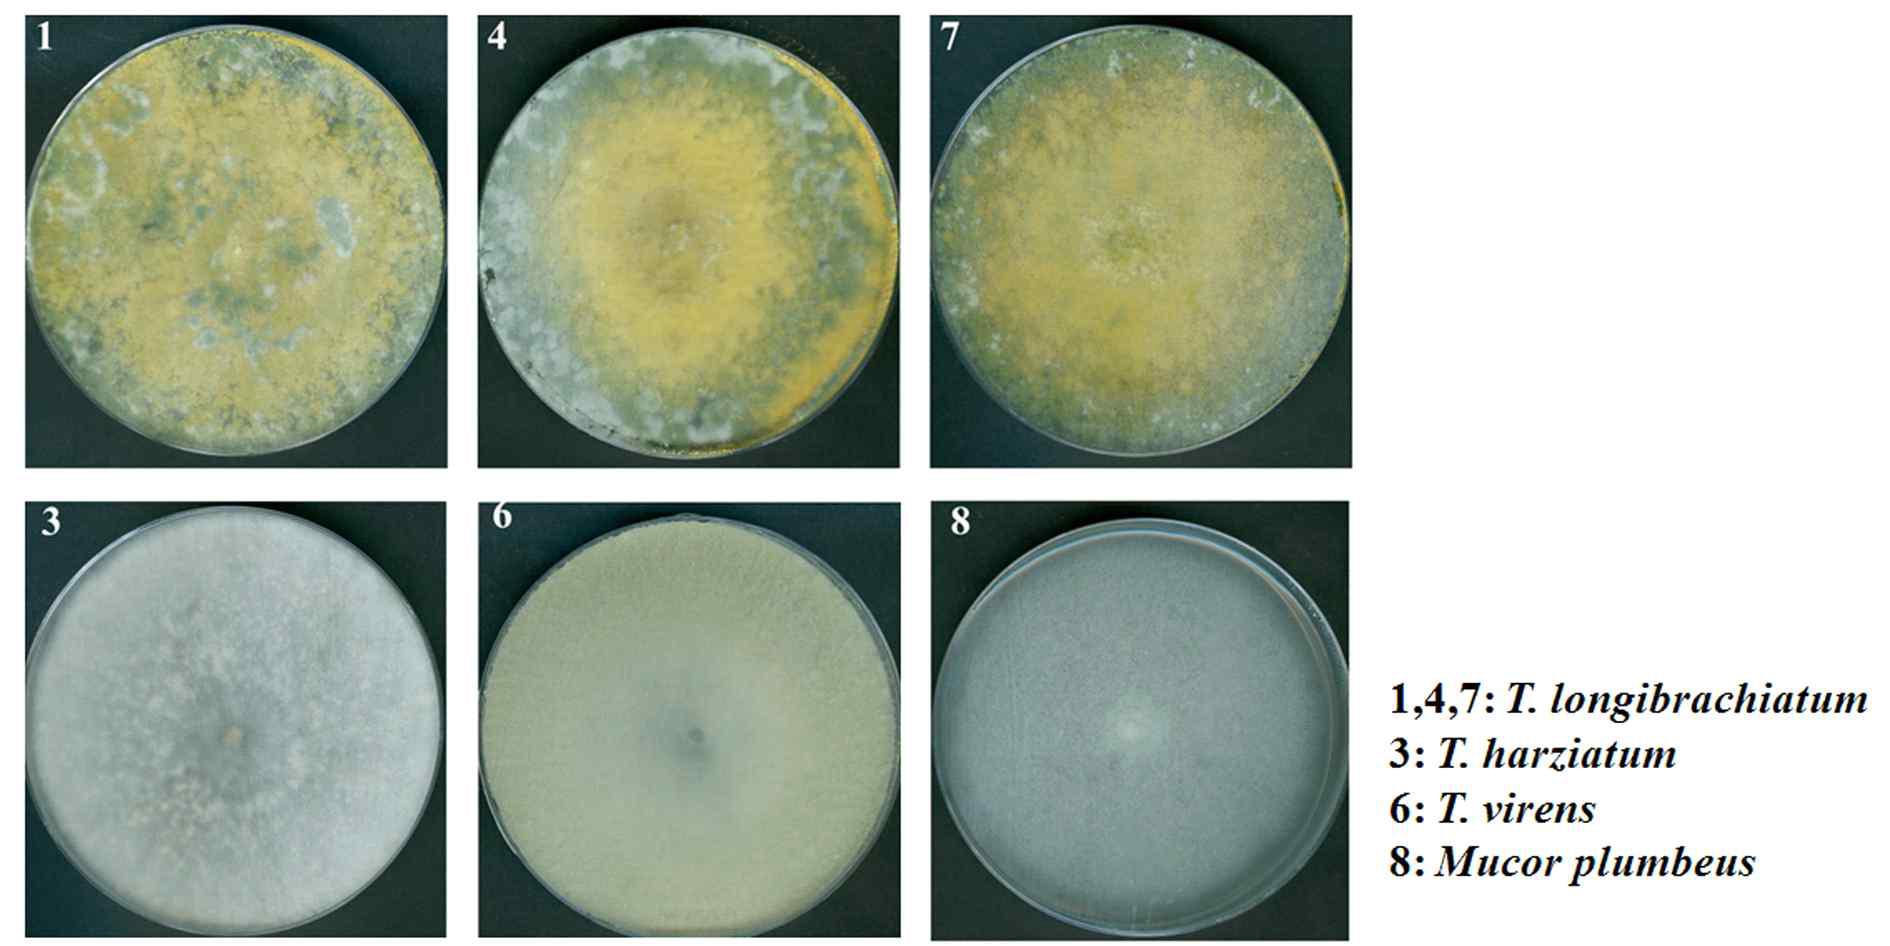 표고버섯(Lentinula edodes)으로 부터 분리한 표고버섯 오염 균주의 형태적 관 찰. PDA 고체배지에 접종하여 30℃에서 1주일간 배양 후 관찰. 1,4,7, Trichoderma longibrachiatum; 3, T. harziatum; 6, T. virens; 8, Mucor plumbeus